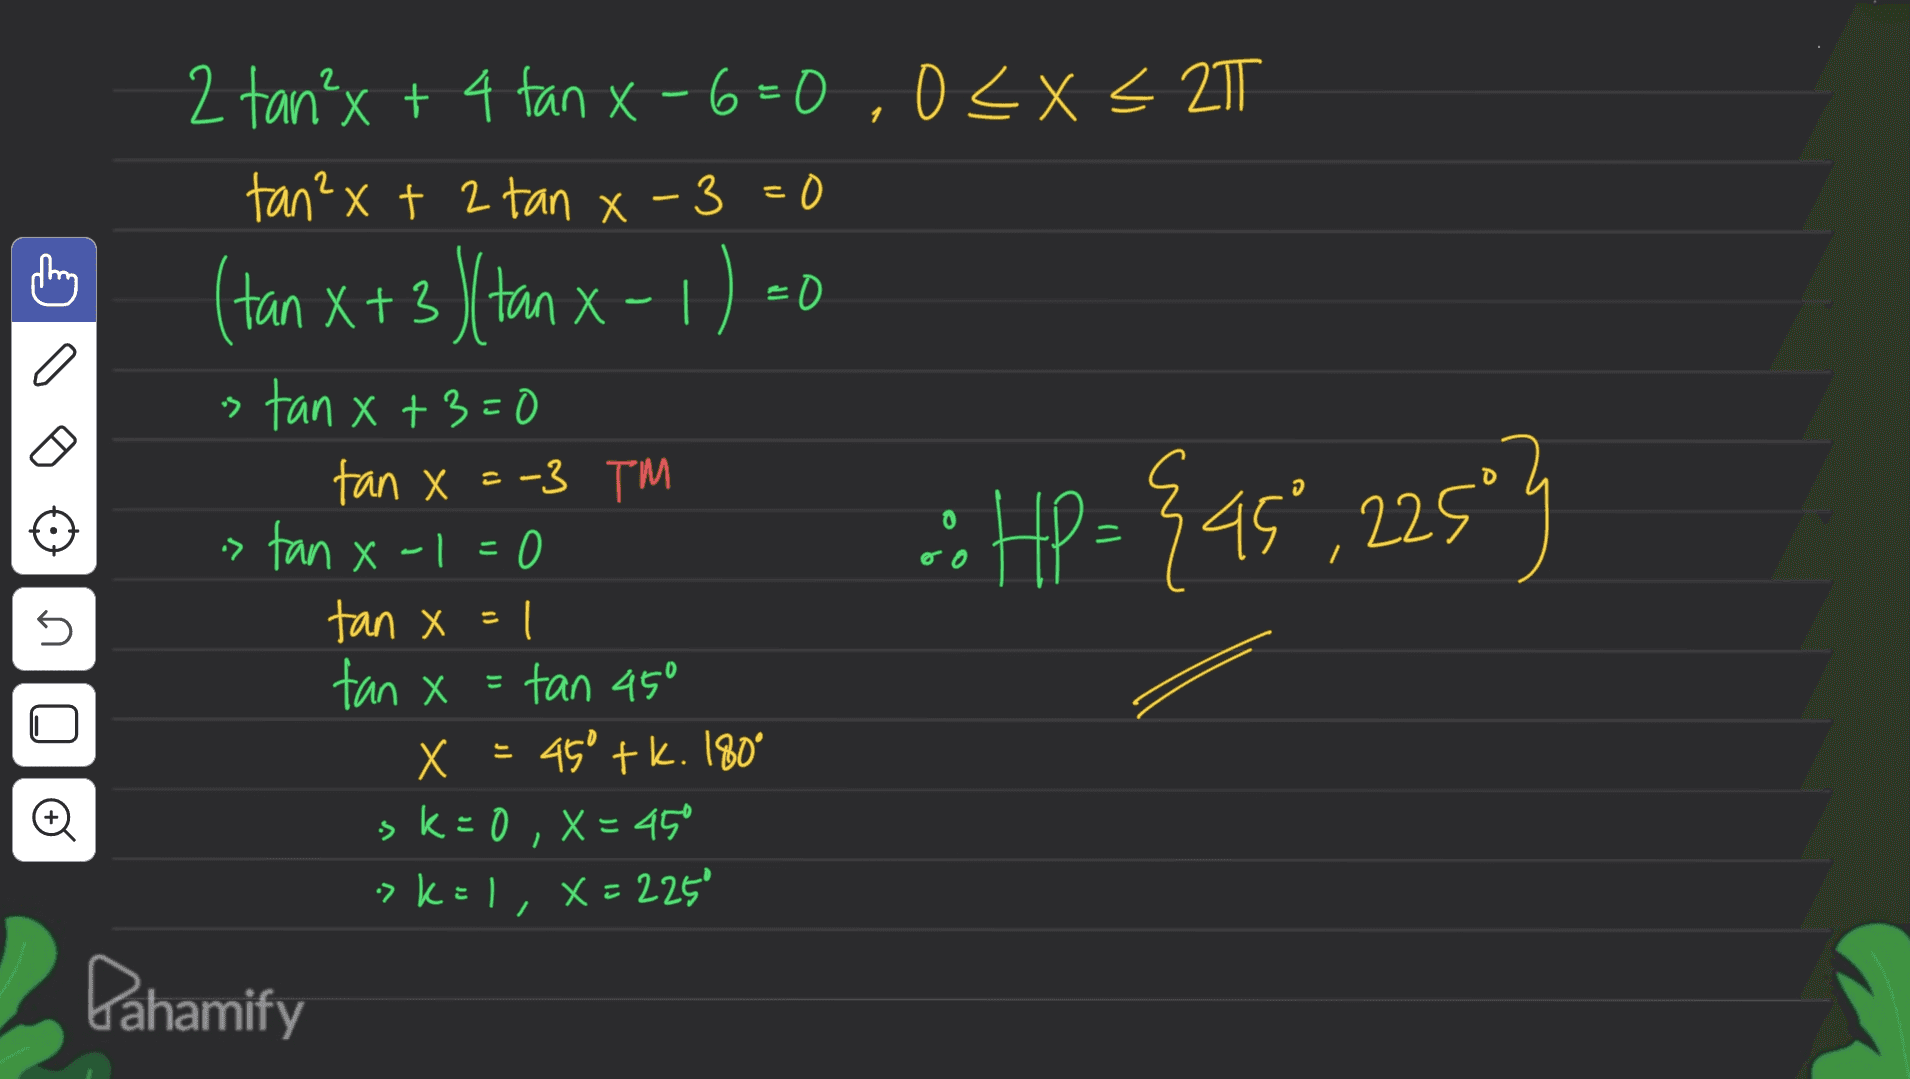 - (tan X+3 / tan x-1) 20 2 2 tan²x + 4 tan x-6=0,0<x< 2T Х tan²x + 2 tan x-3=0 x+3)( stan x +3=0 tan X=-3 TM tan x-1=0 tan x=1 tan x = tan 450 X x = 45° tk. 180 . ° sk=0 X= 45 kel, X = 2250 X a .: HP= {45",2251 :: / 5 © , - >k= Pahamify 